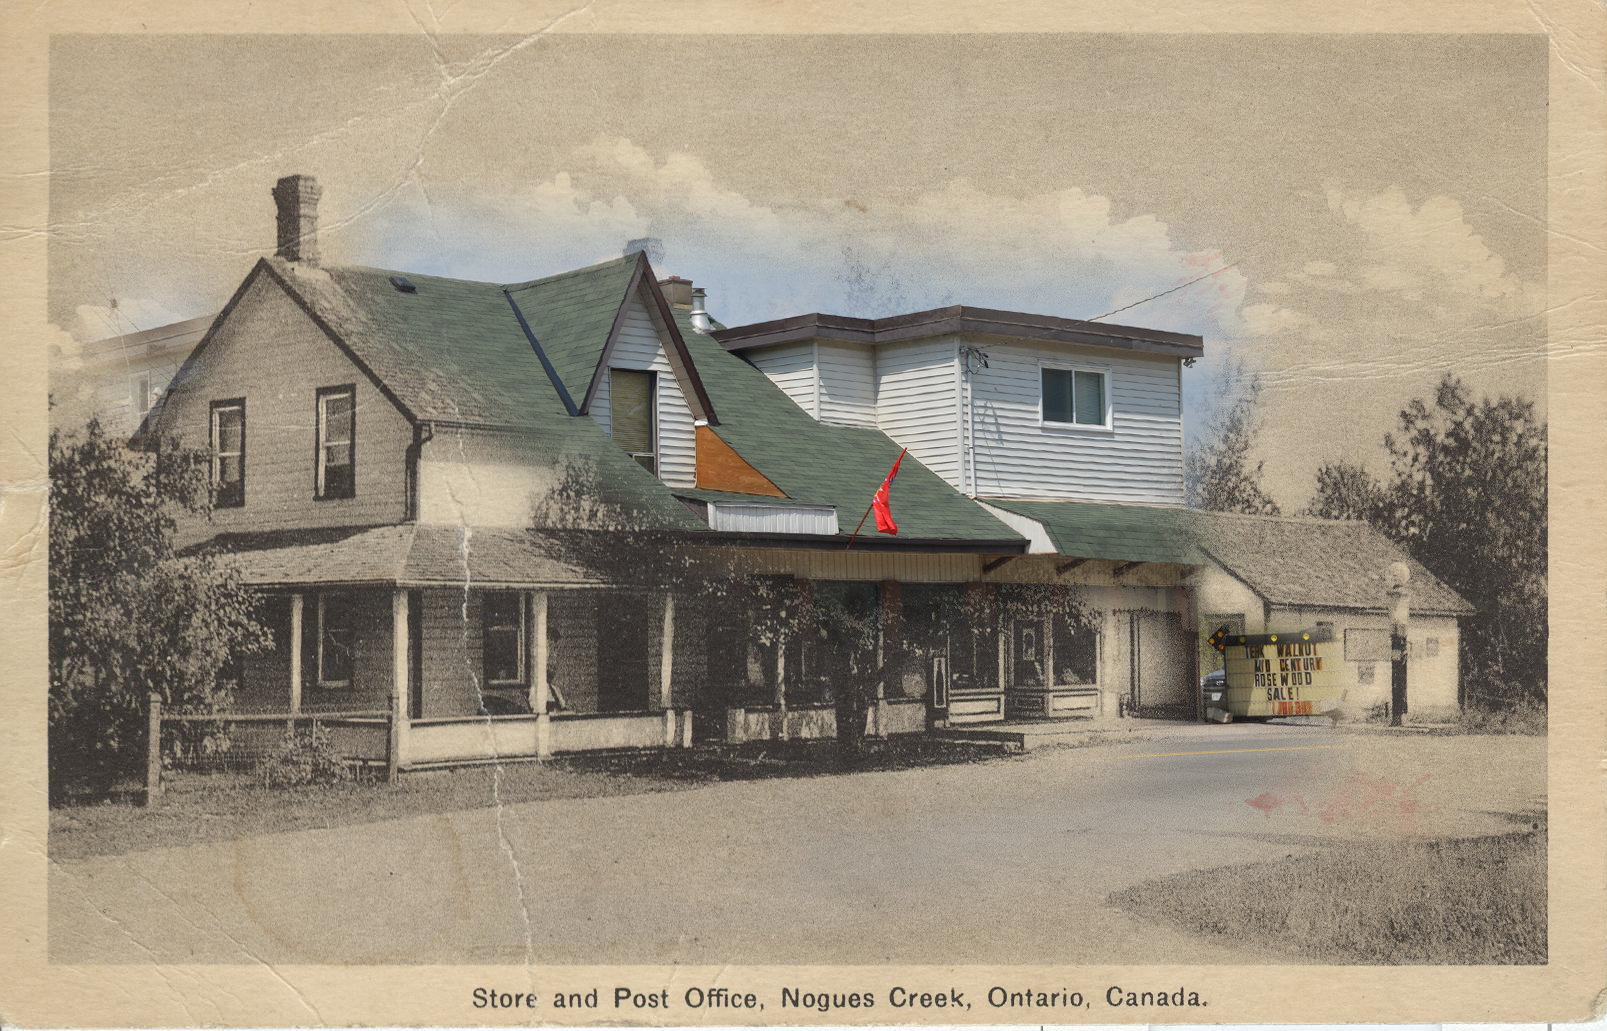 Deux images combinées (une contemporaine et une en noir et blanc) d'une maison convertie en magazin et bureau de poste.